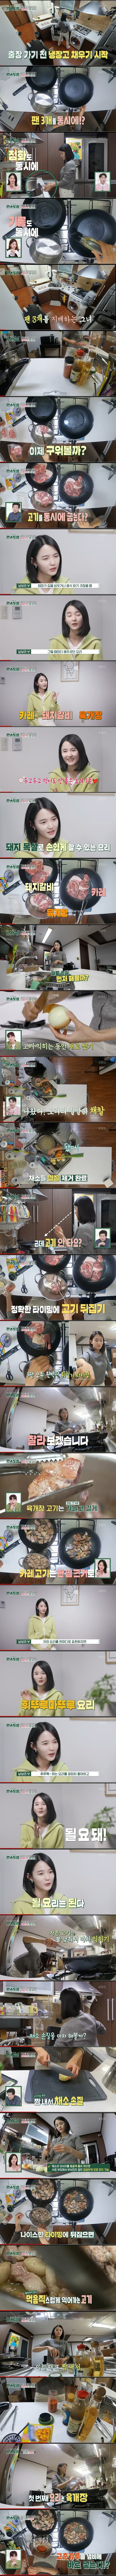 동생만 12명인 배우 남보라의 요리실력